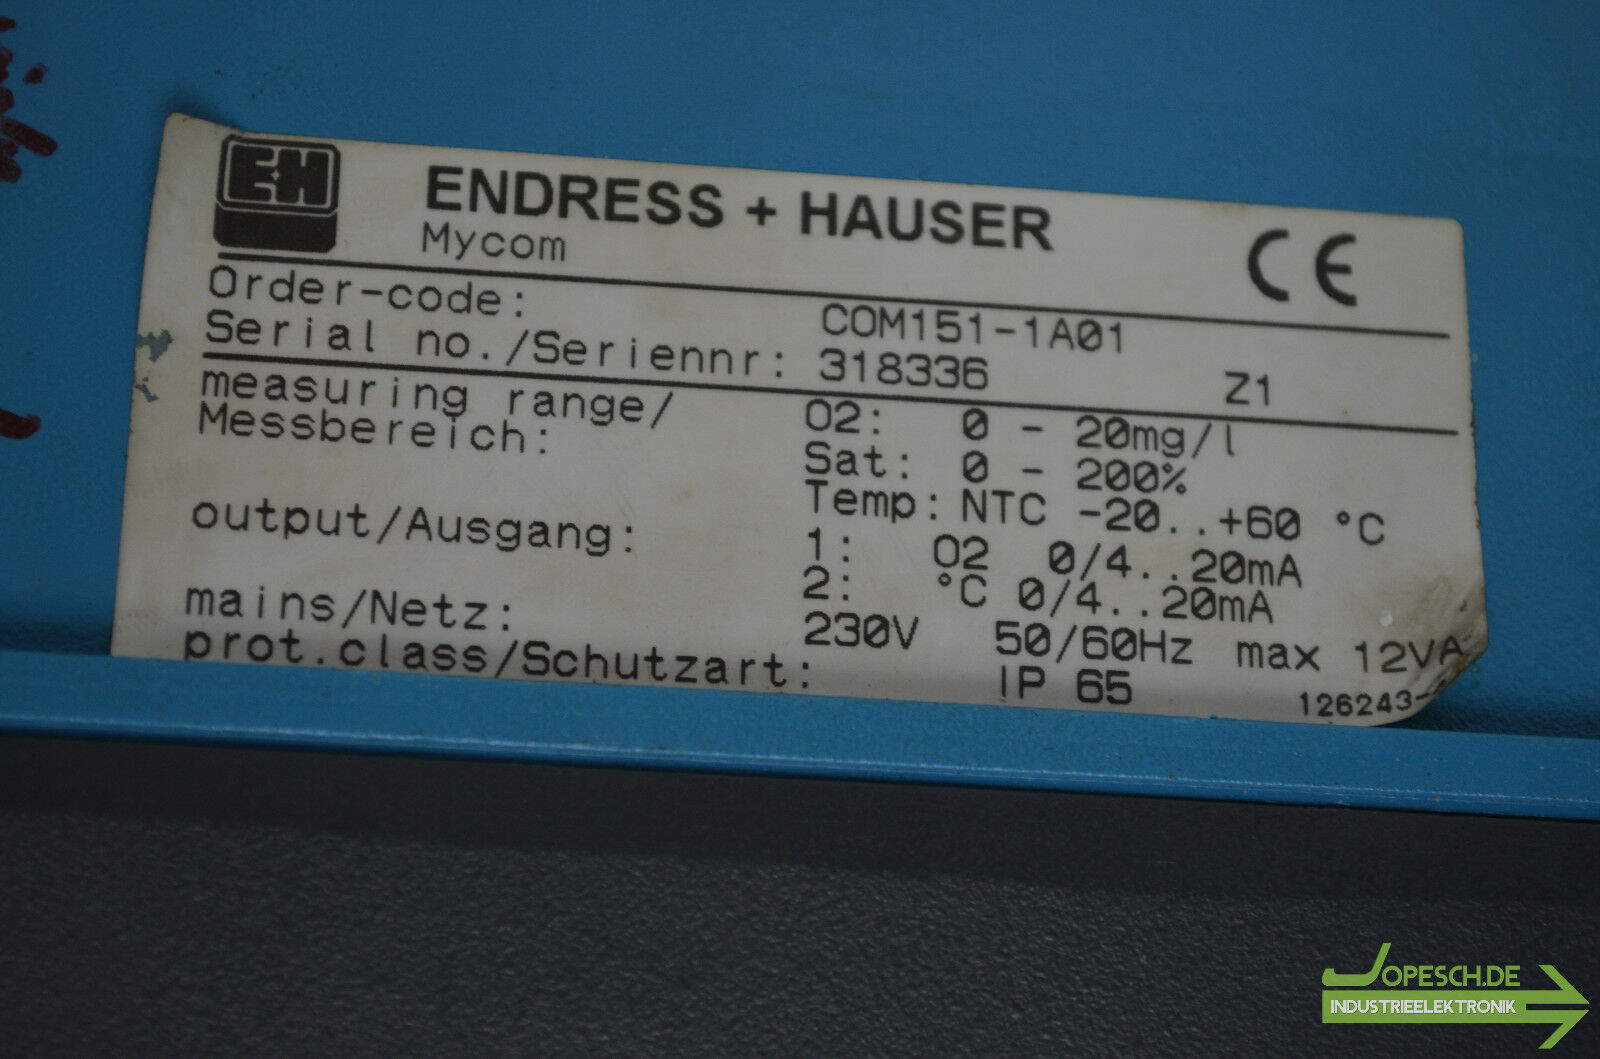 Endress+Hauser Mycom COM151-1A01